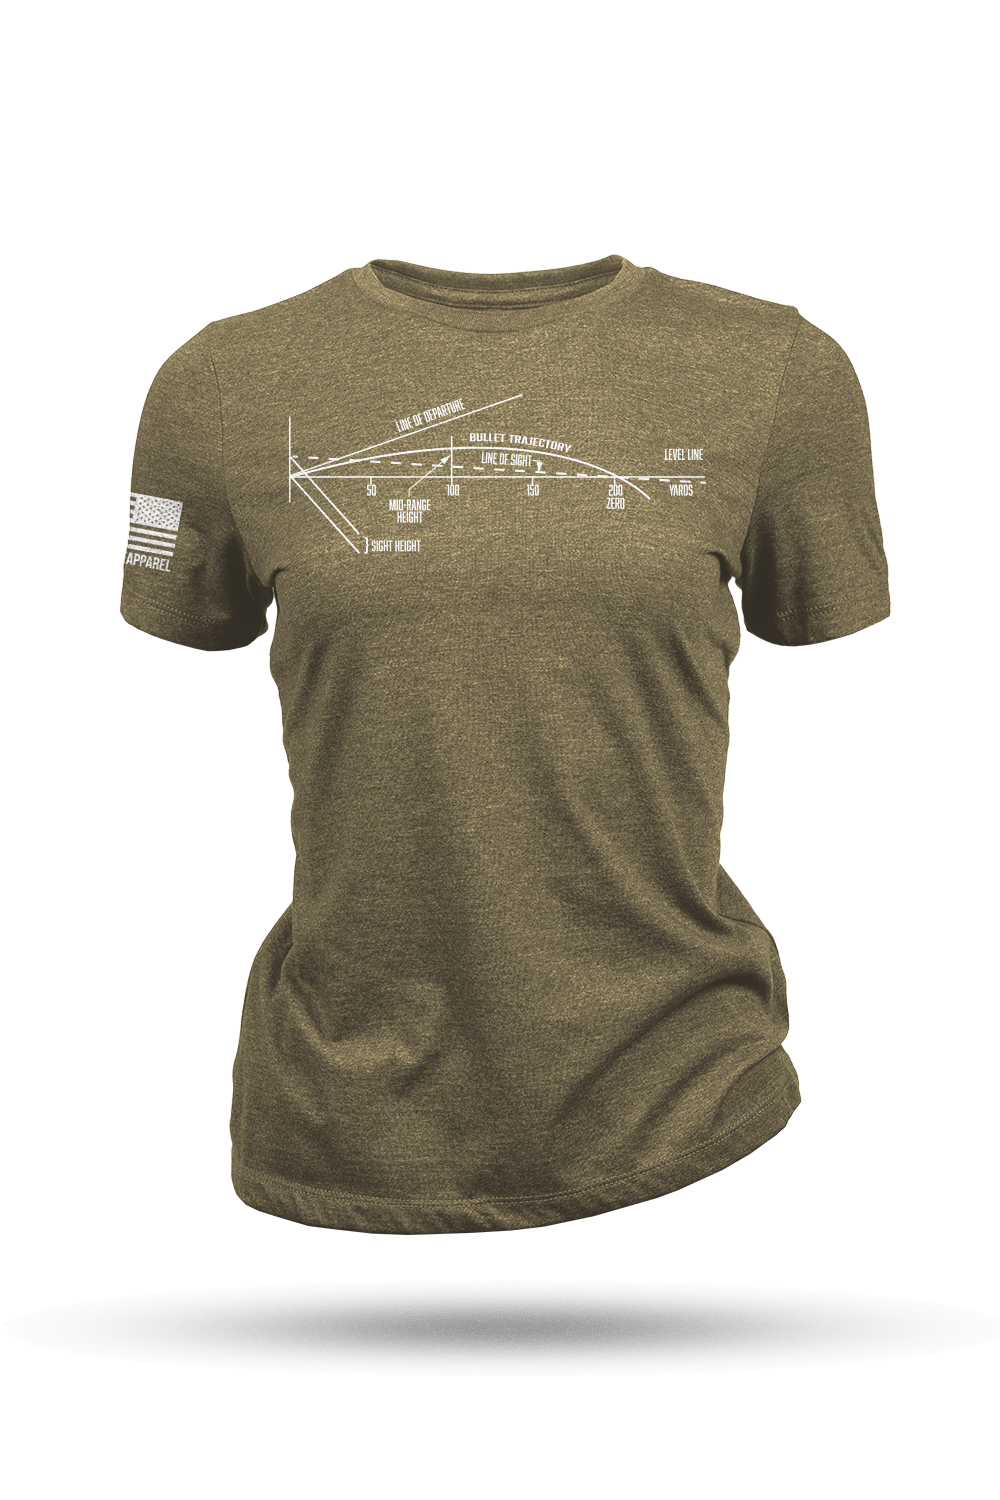 Women's T-Shirt - Ballistics